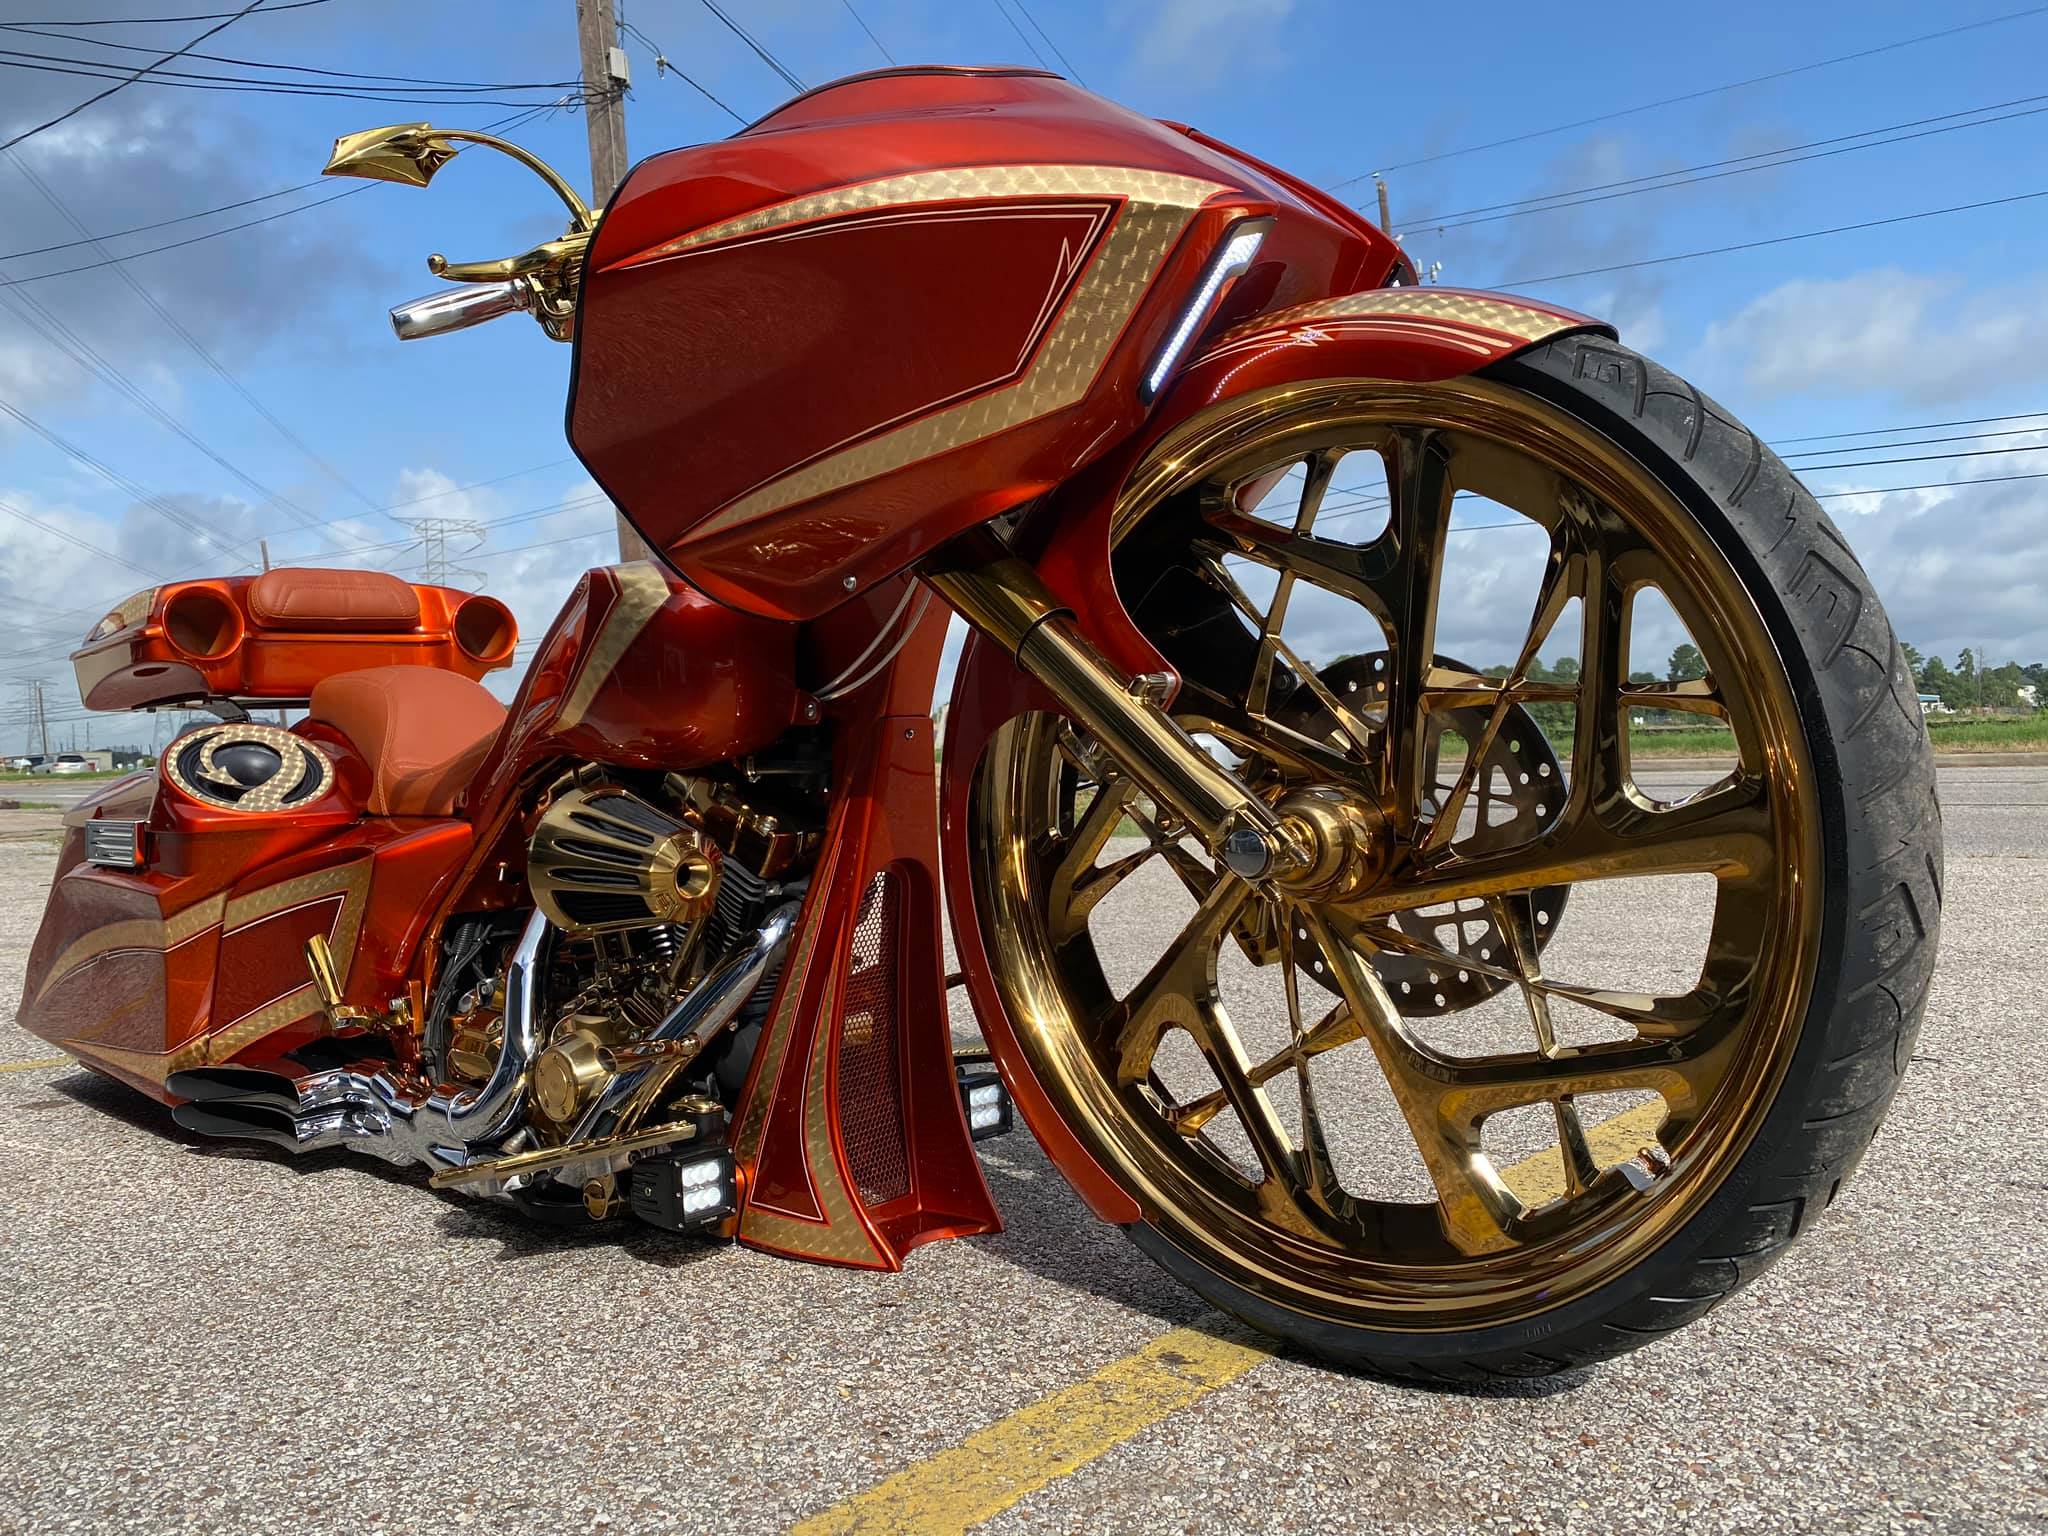 Vicious Custom Motorcycle Wheel - Custom Motorcycle Rims